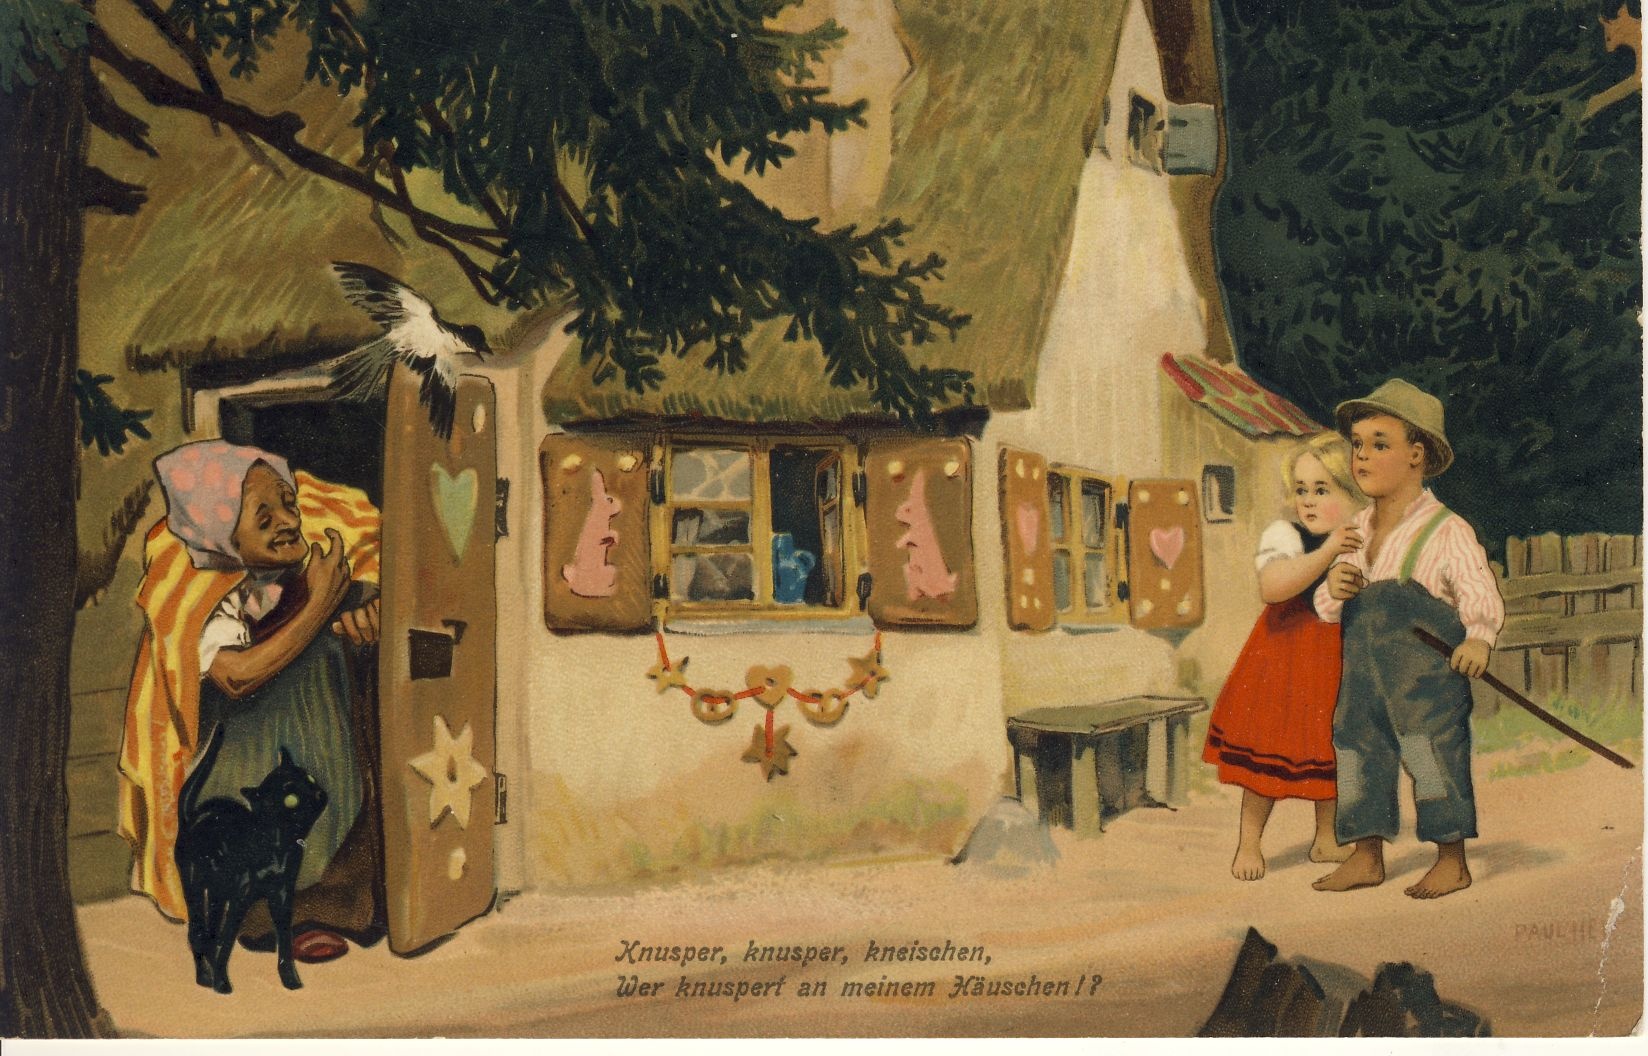 Hänsel und Gretel Märchenpostkarte (Deutsches Märchen- und Wesersagenmuseum CC BY-NC-SA)